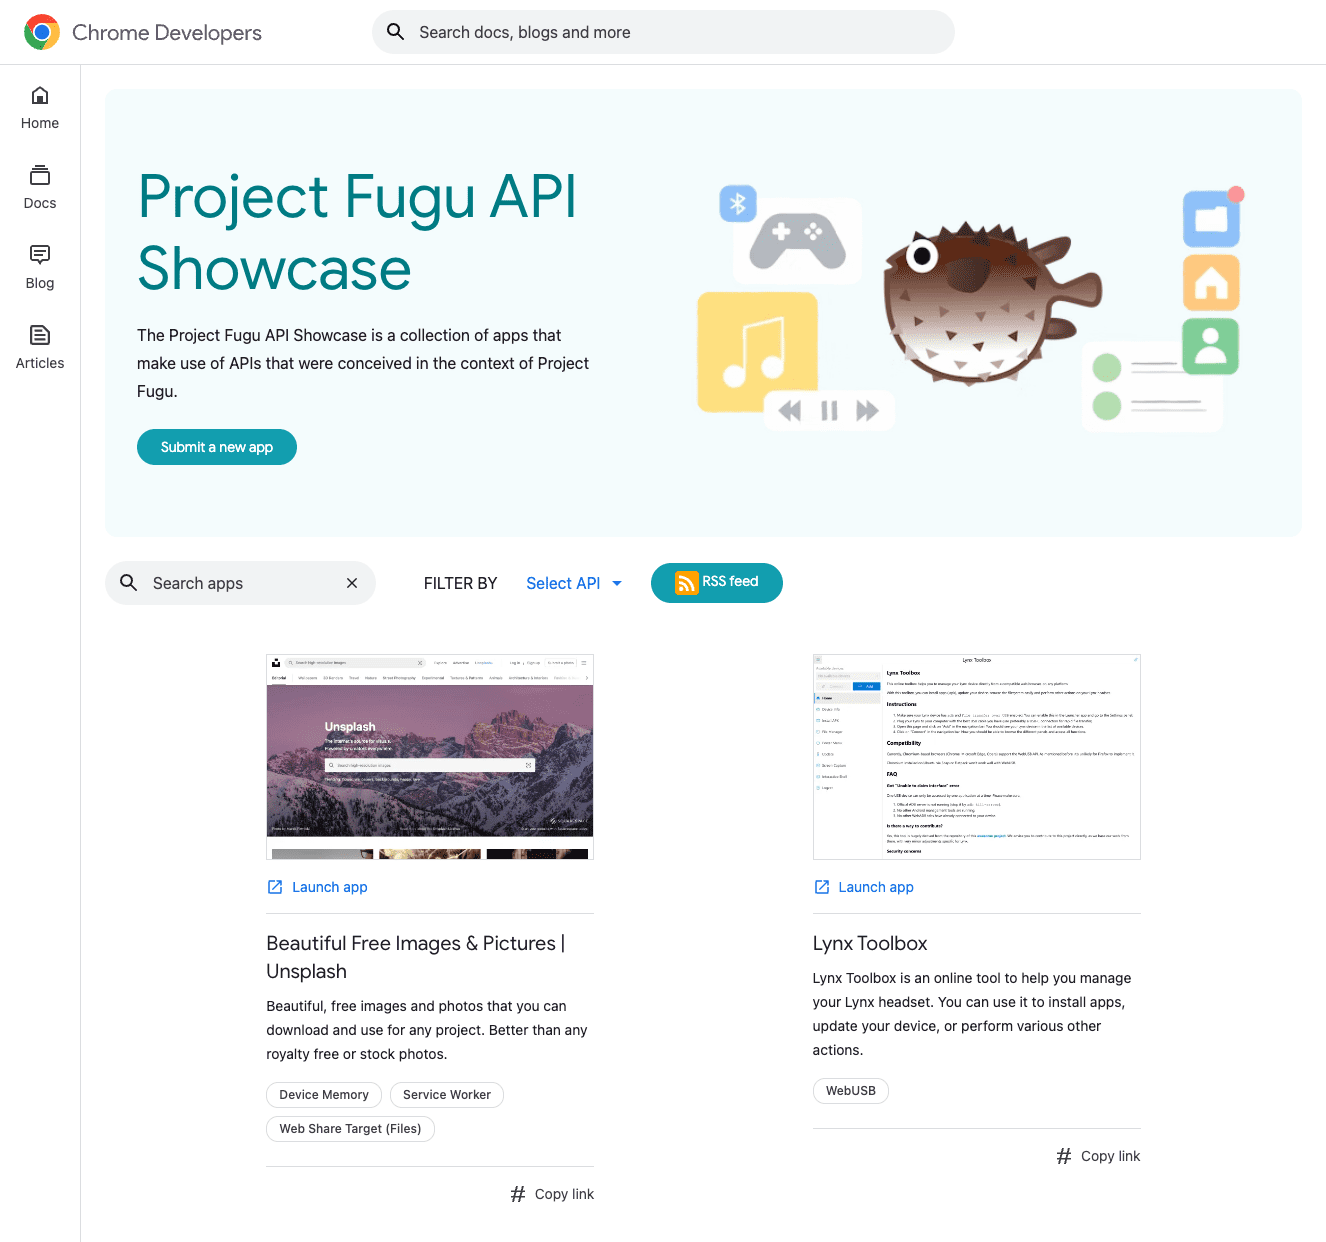 The Project Fugu API Showcase